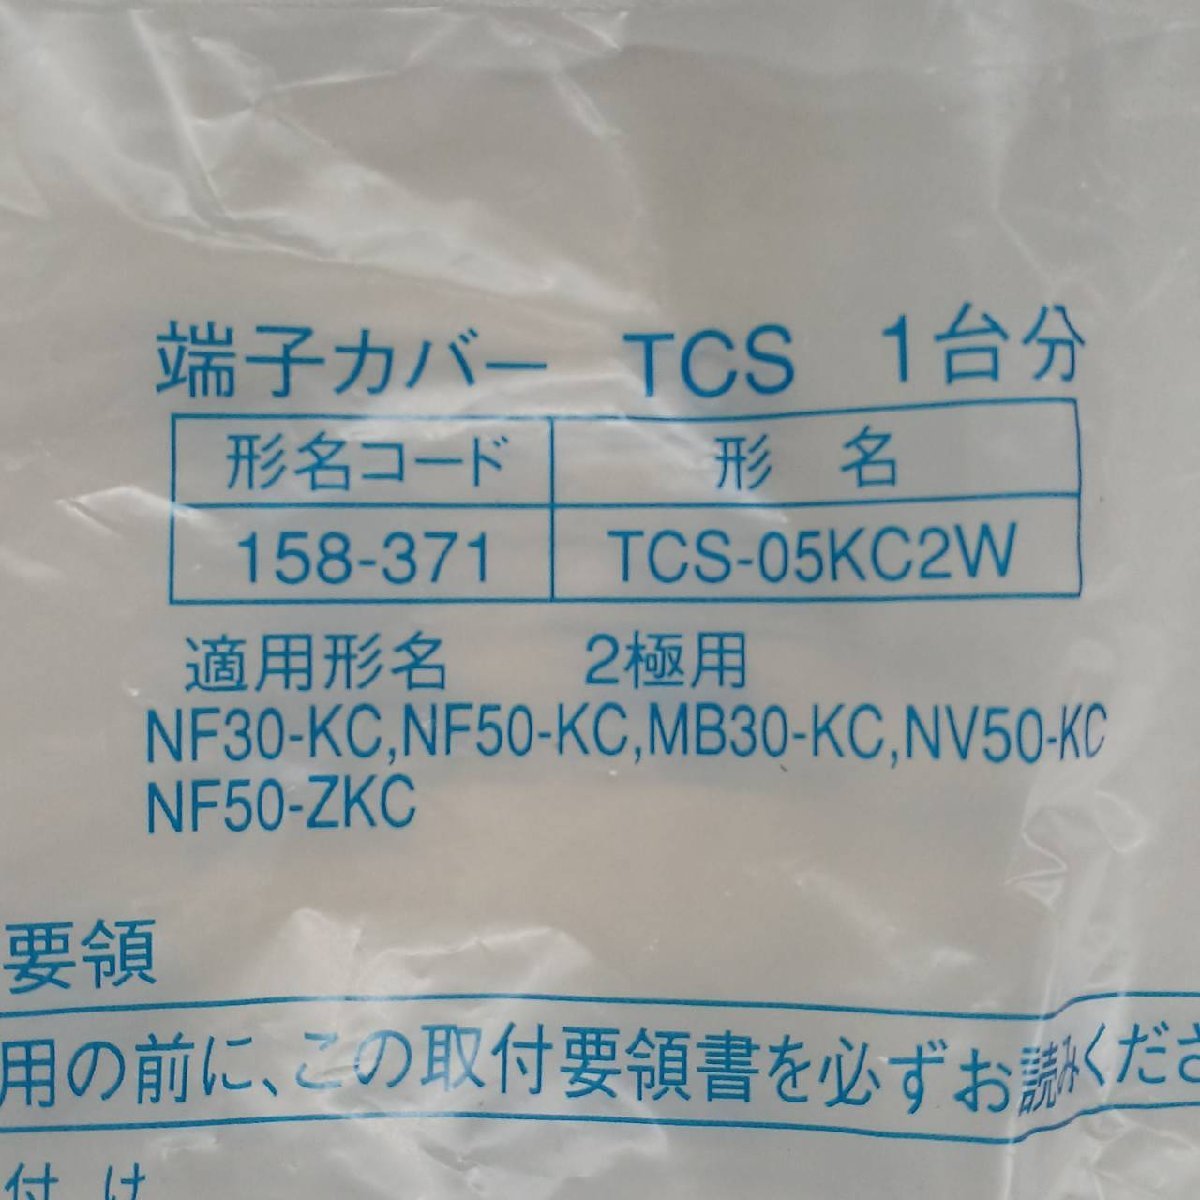 新品未使用 TCS-05KC2W 漏電・ノーフューズ遮断器用 小型端子カバー 三菱電機 B-6_画像2